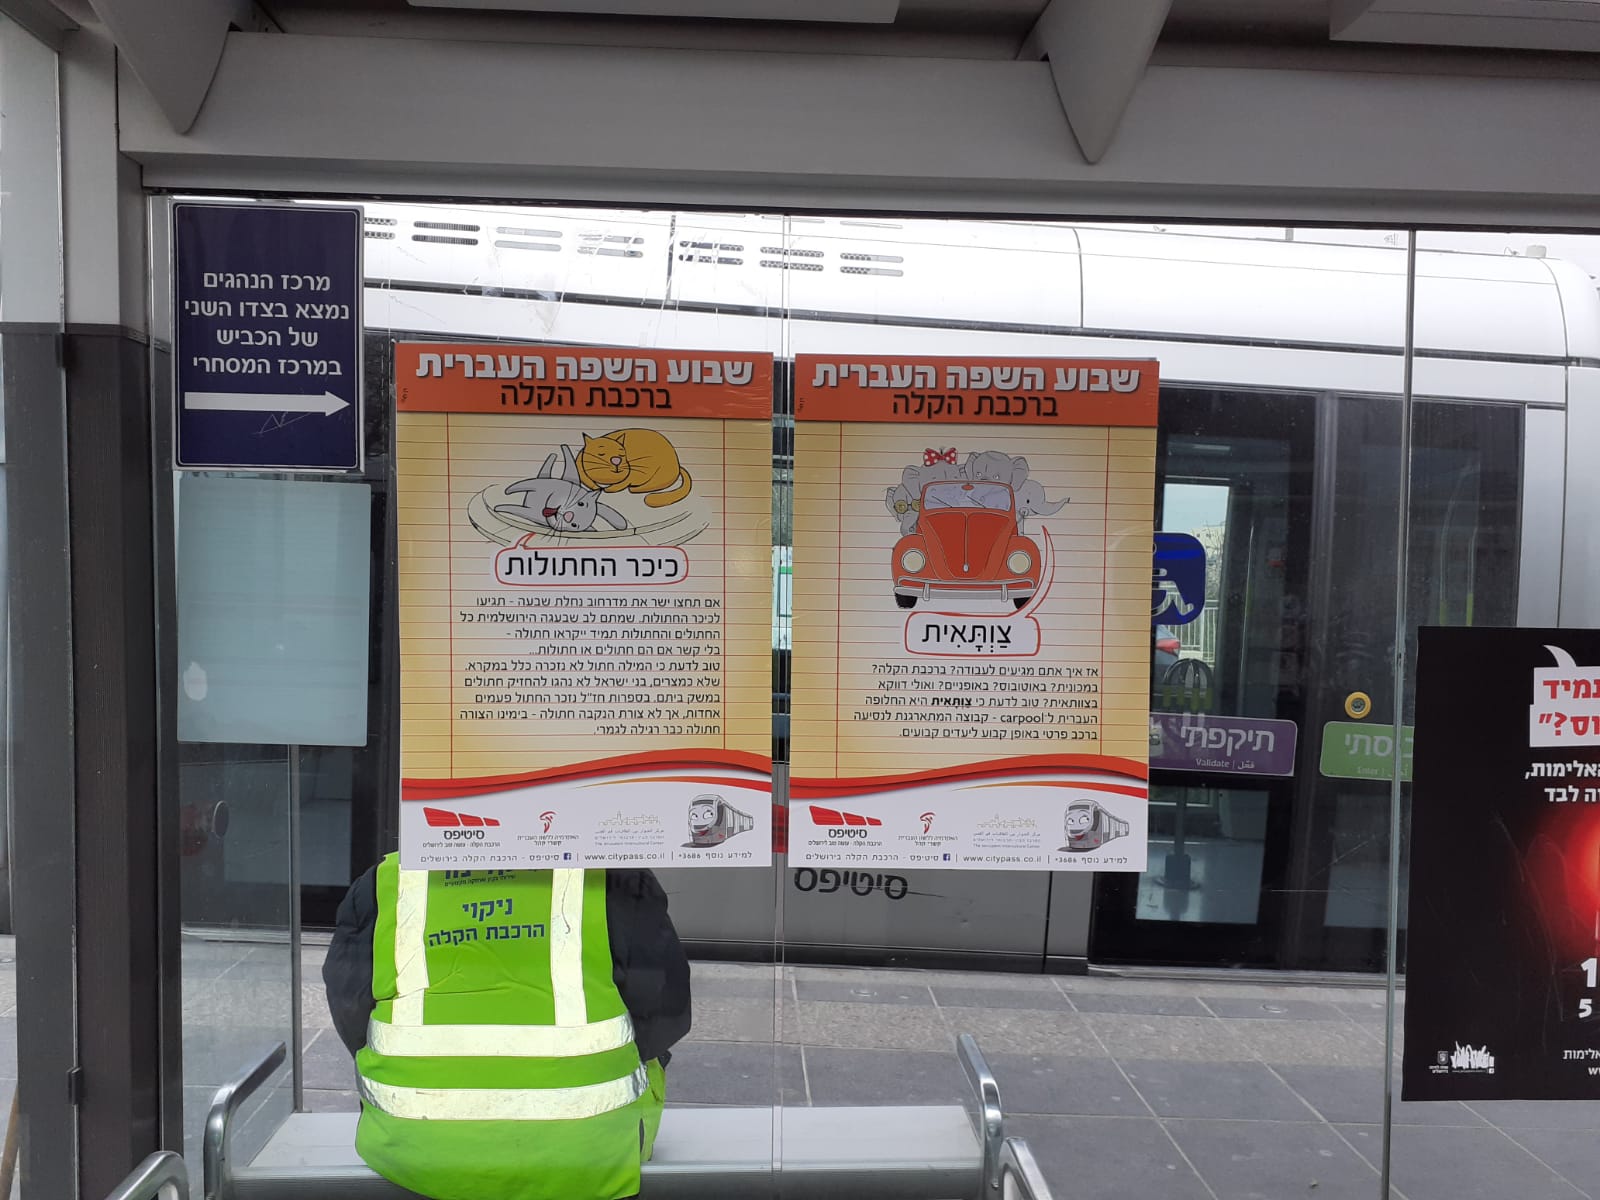 כרזות בתחנות רכבת קלה בירושלים בשבוע השפה העברית 2020 סיטיפס